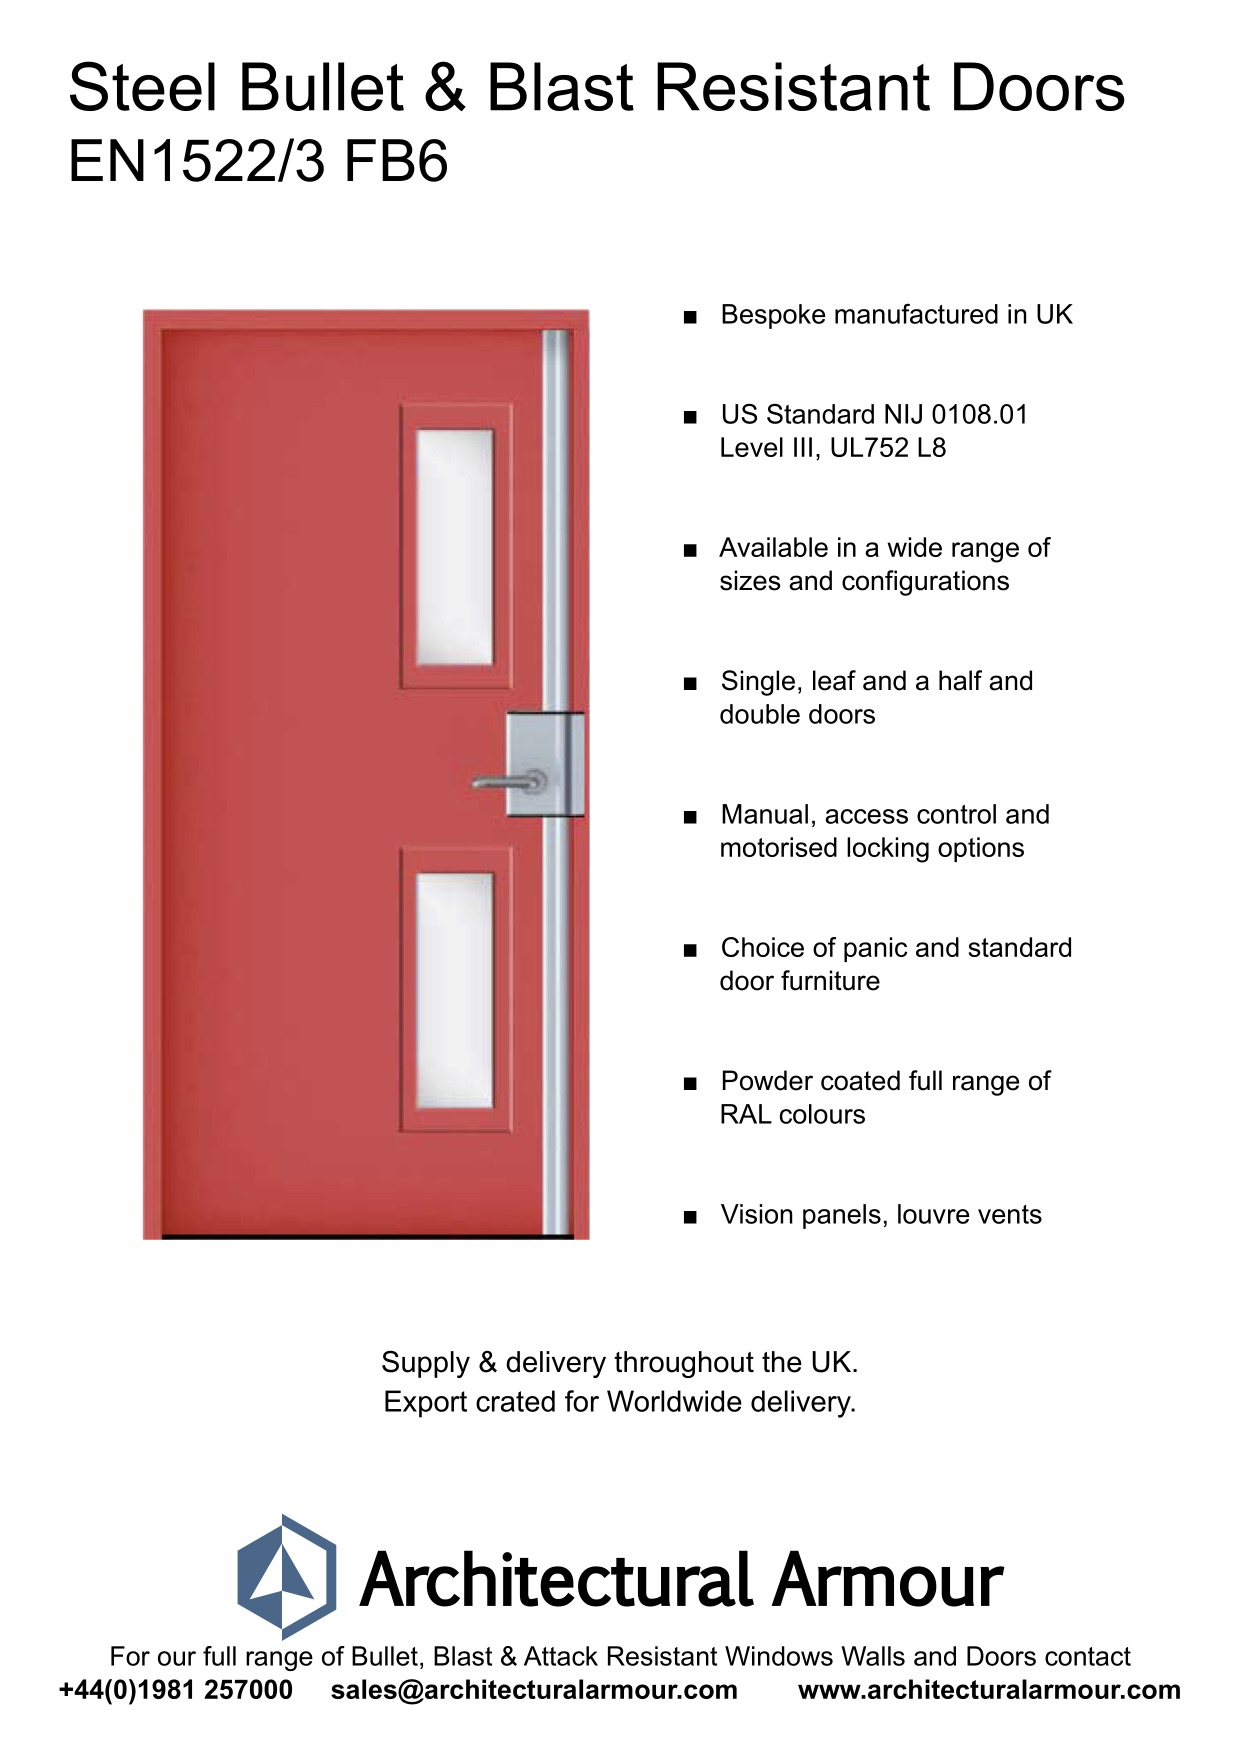 Blast-and-bulletproof-Steel-Door-Vision Panels-EN1522-3-FB6